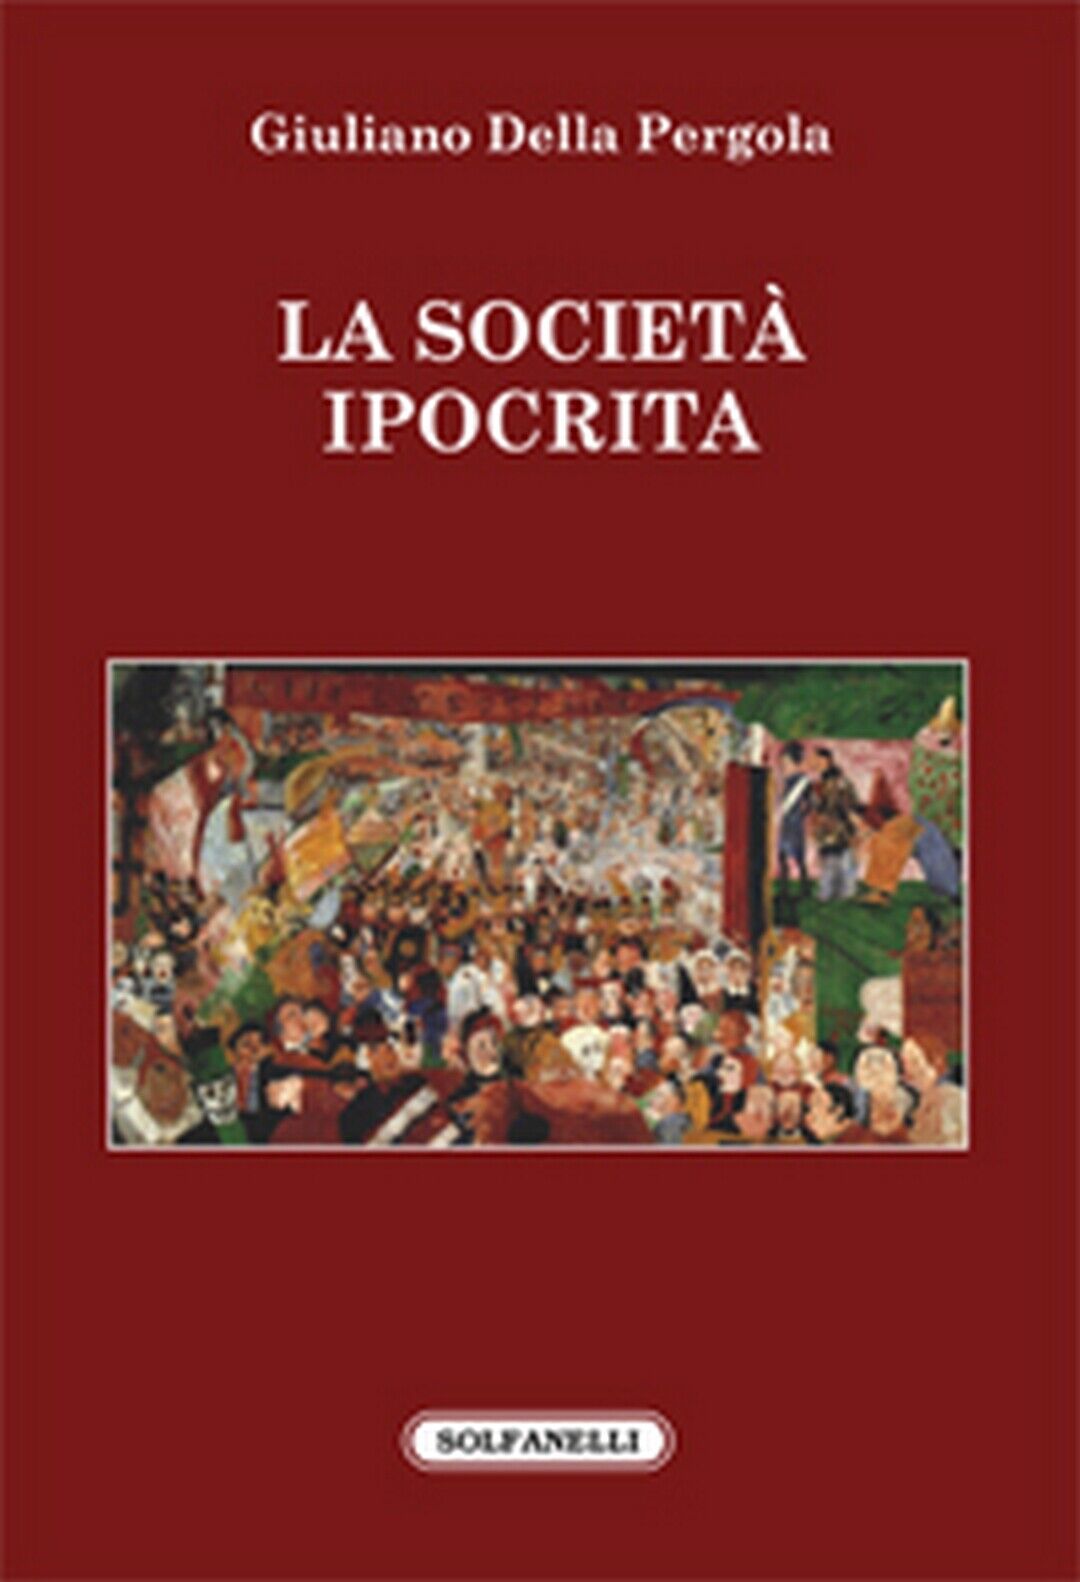 LA SOCIET? IPOCRITA  di Giuliano Della Pergola,  Solfanelli Edizioni